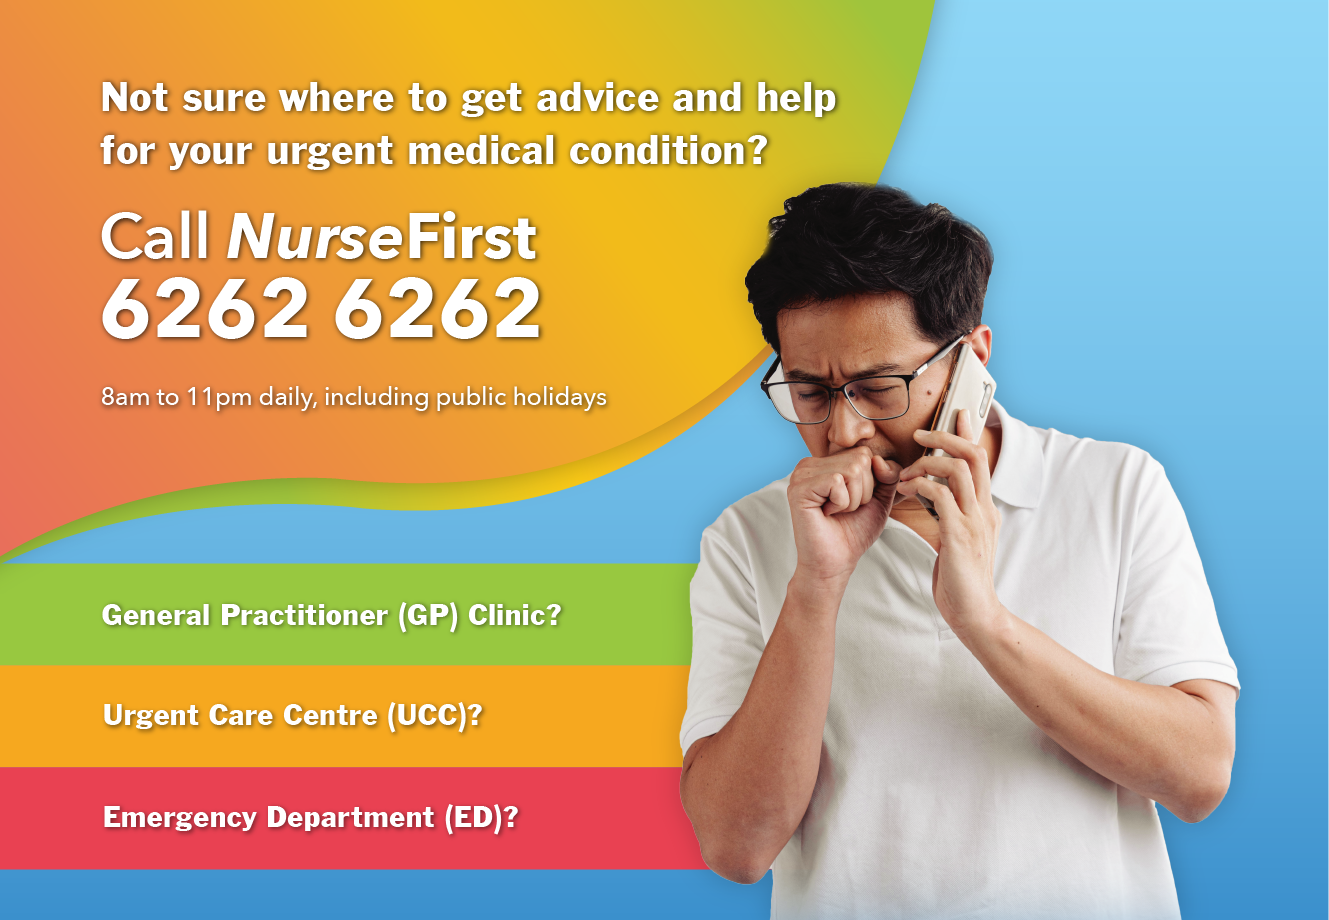 NurseFirst Helpline at 6262 6262